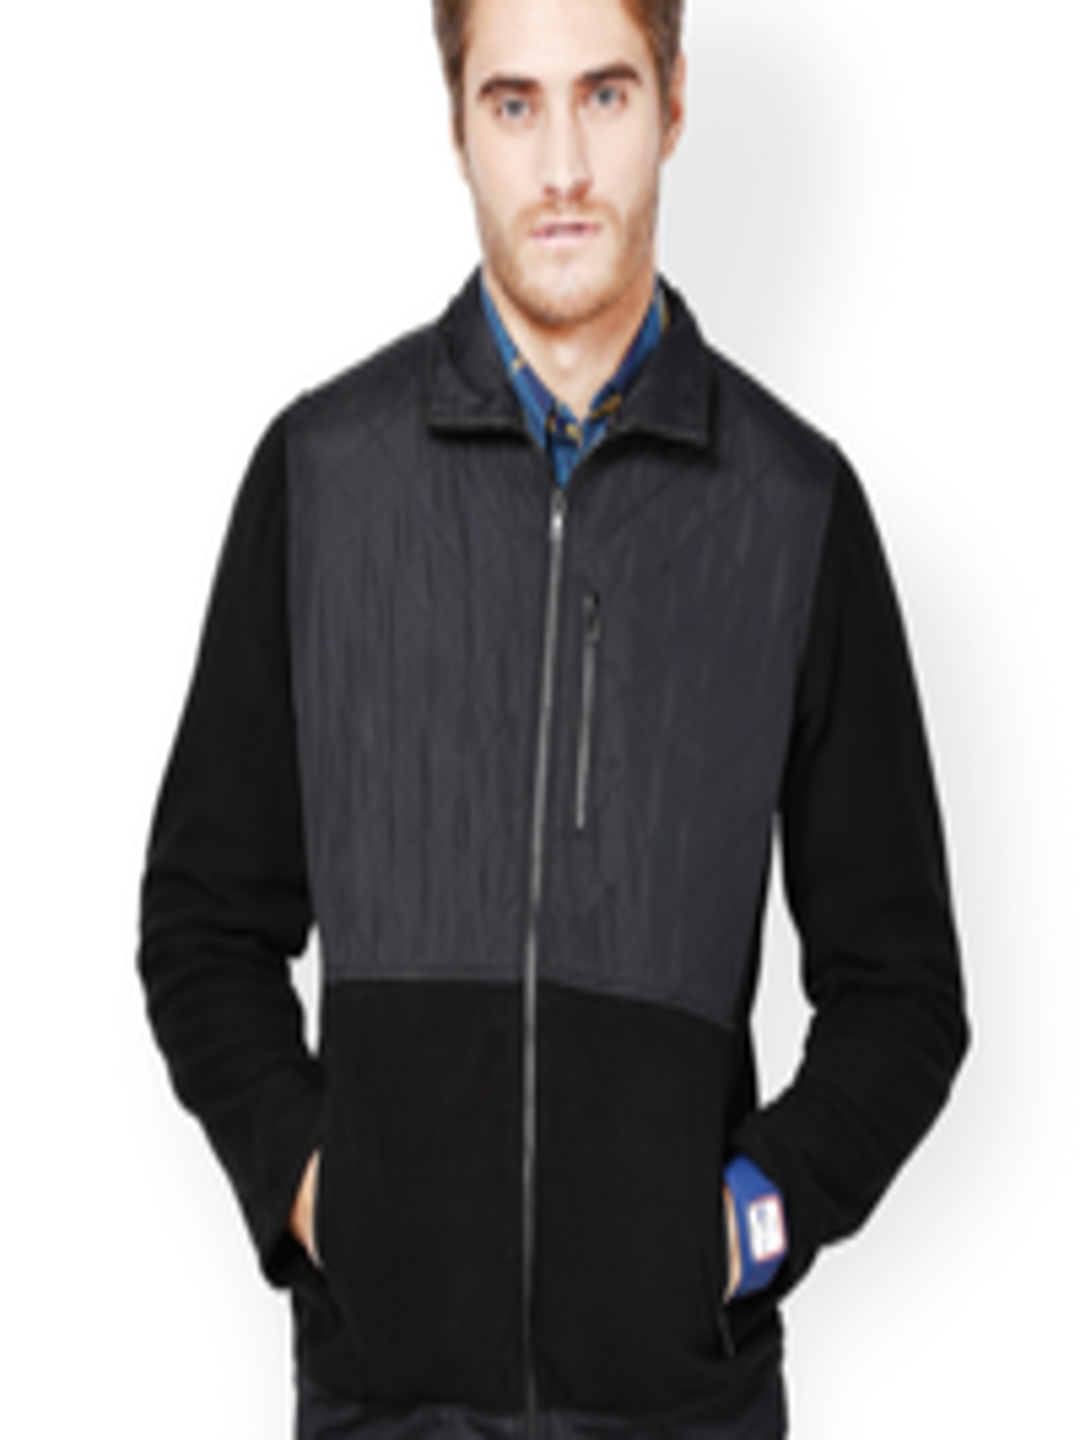 Buy The Vanca Men Black Jacket - Jackets for Men 534607 | Myntra